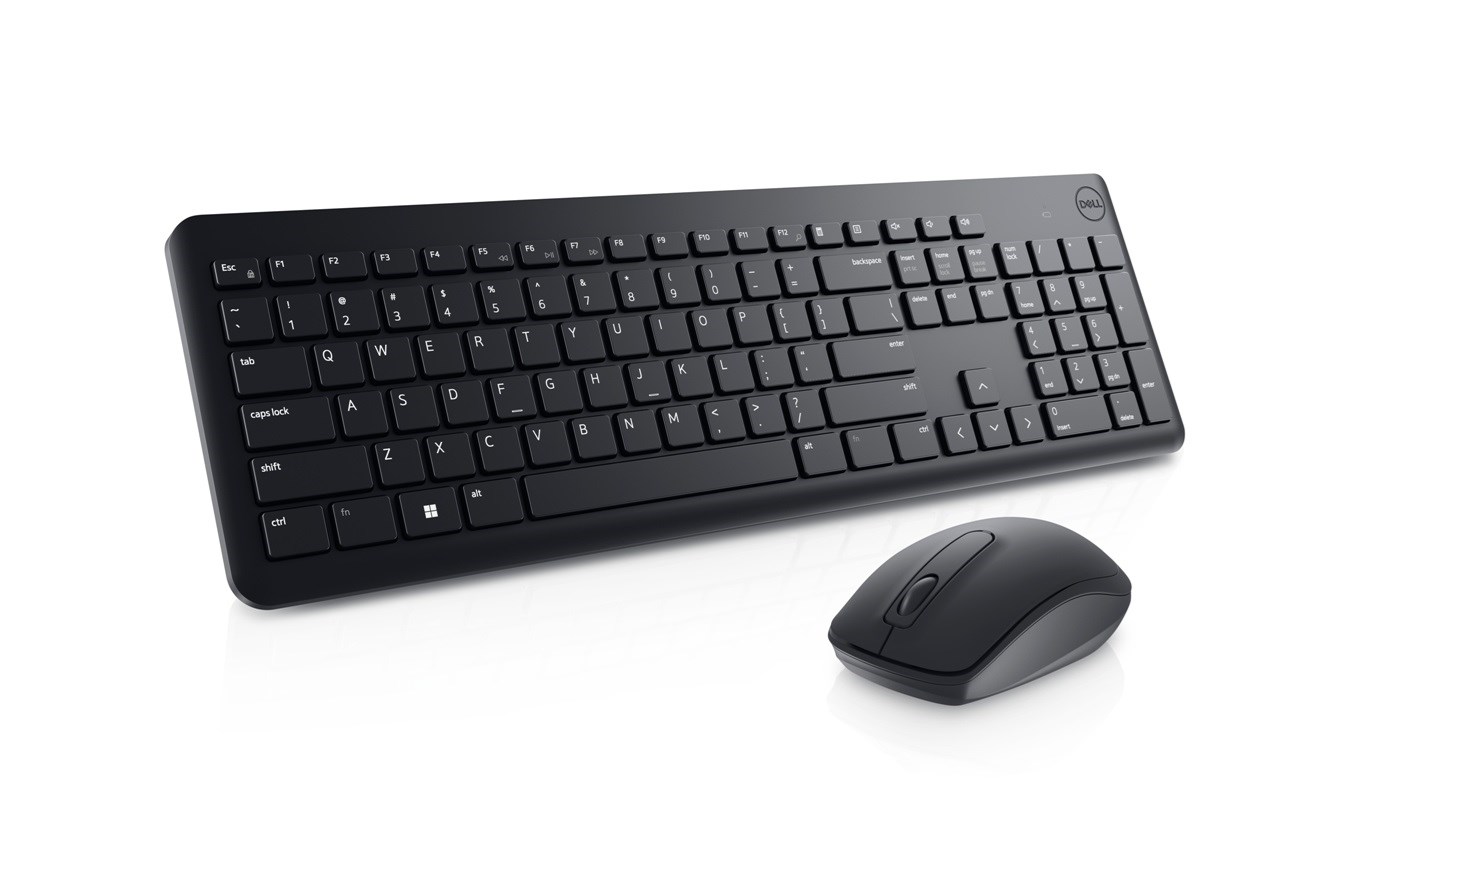 Dell KM3322W Kablosuz Klavye Mouse Set Siyah